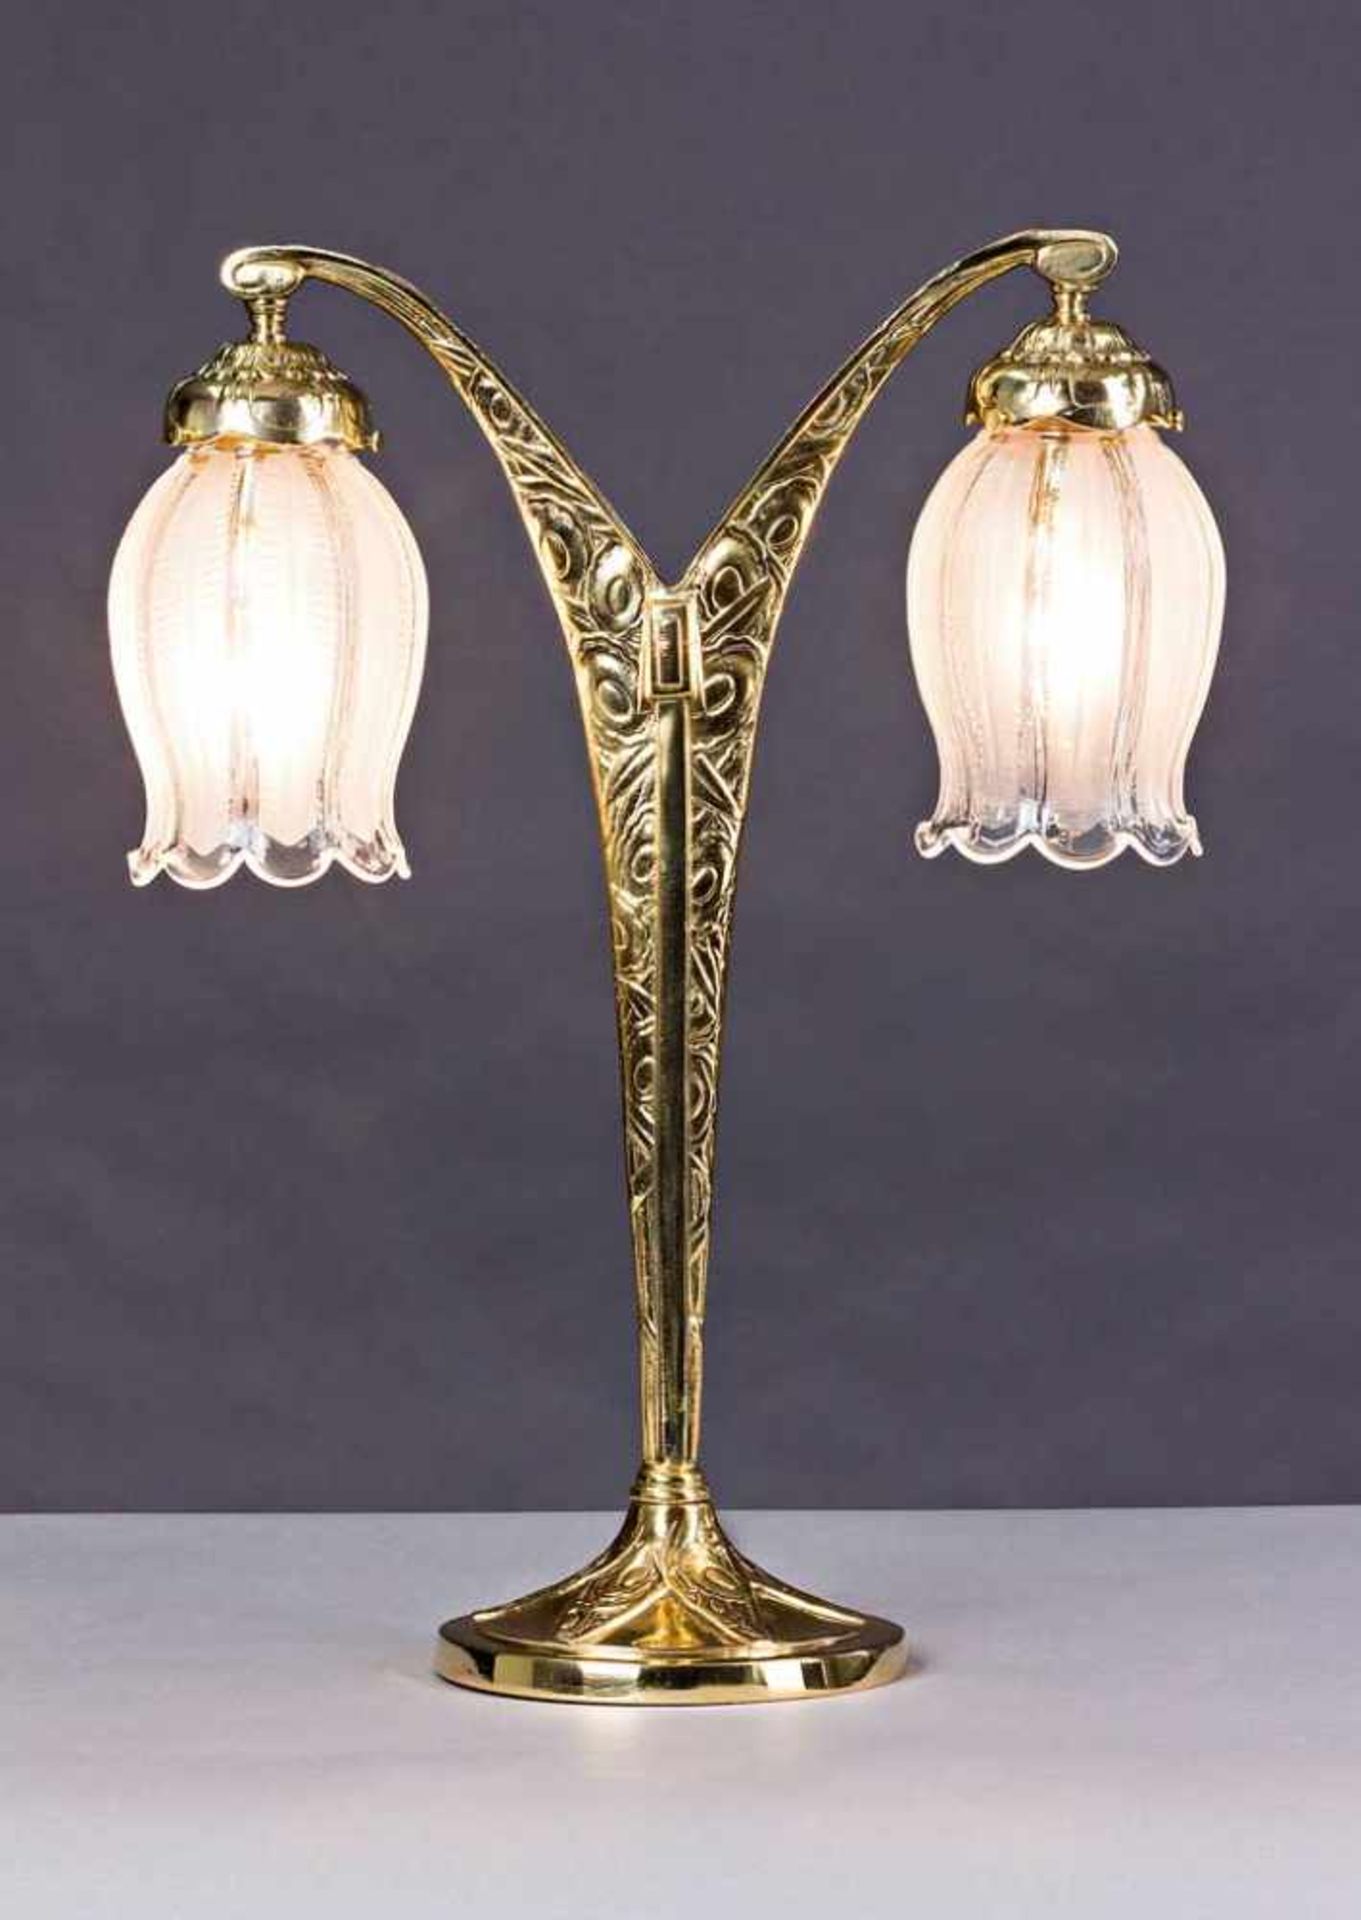 Jugendstil-Tischlampe. V-förmige Messinghalterung mit zwei Lichtstellen. Glasschirme. Um 1900. H